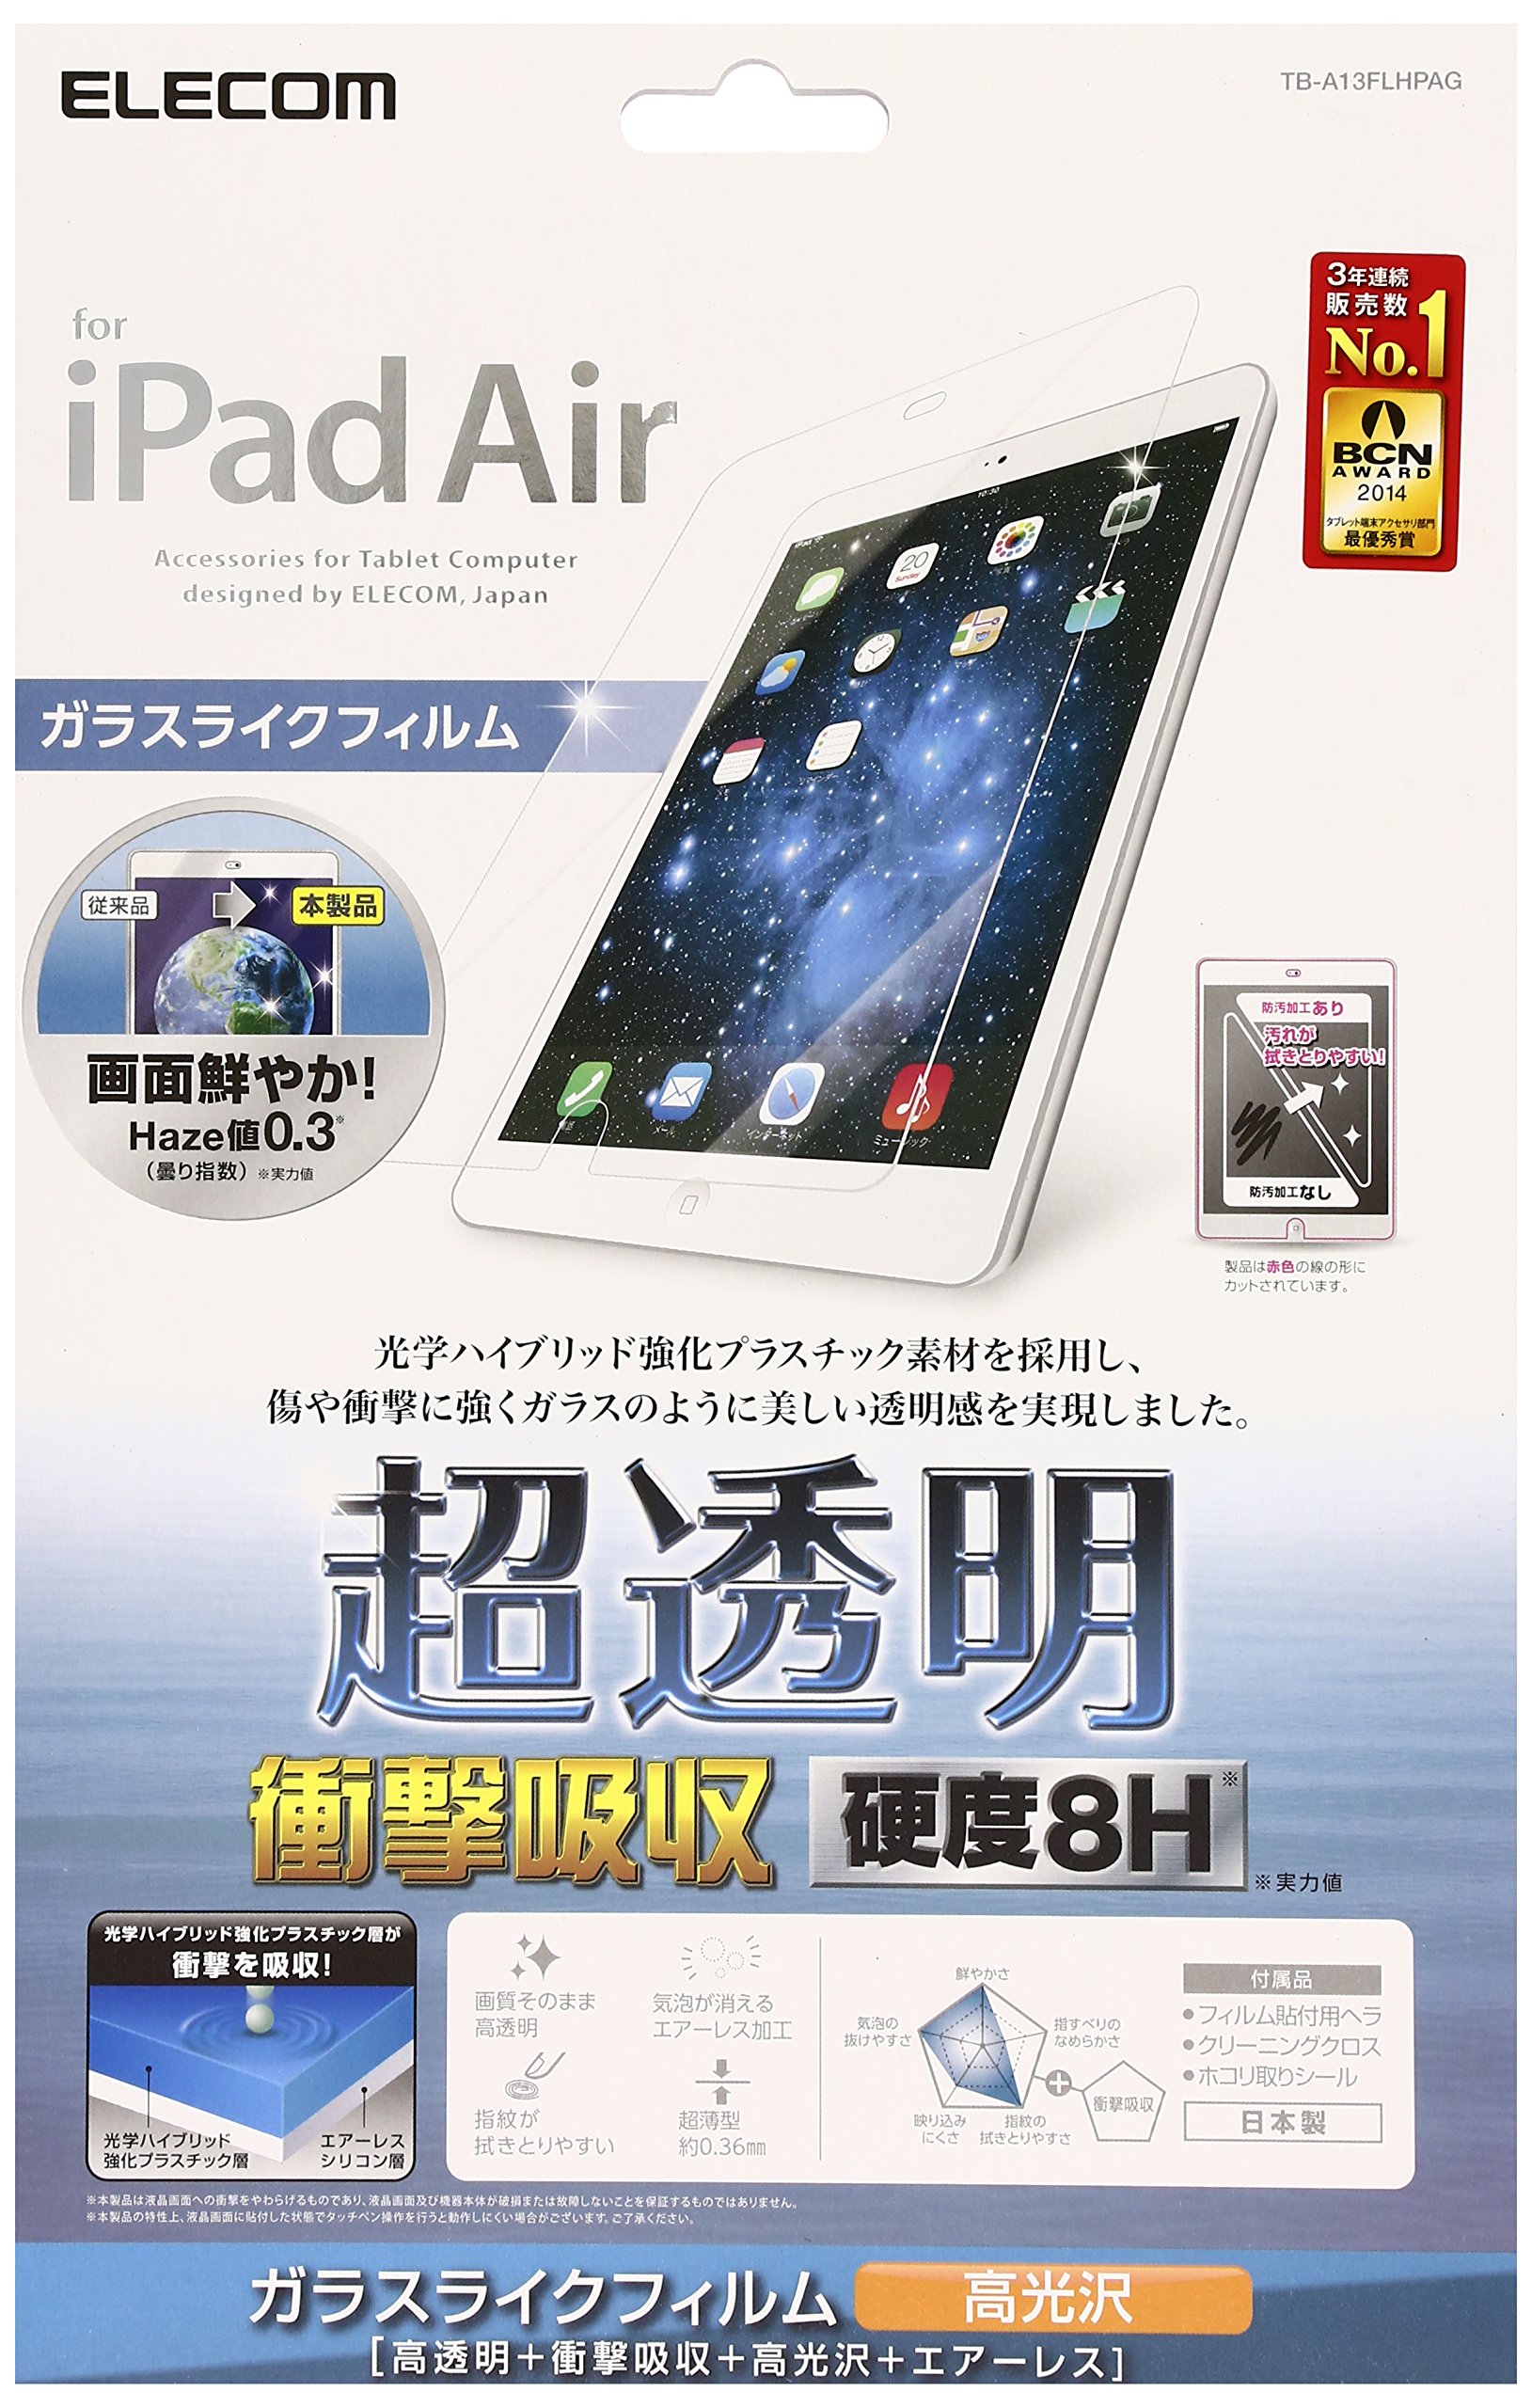 2014年モデルELECOM iPad Air 液晶保護フィルム 高透過+高硬度 TB-A13FLHPAG